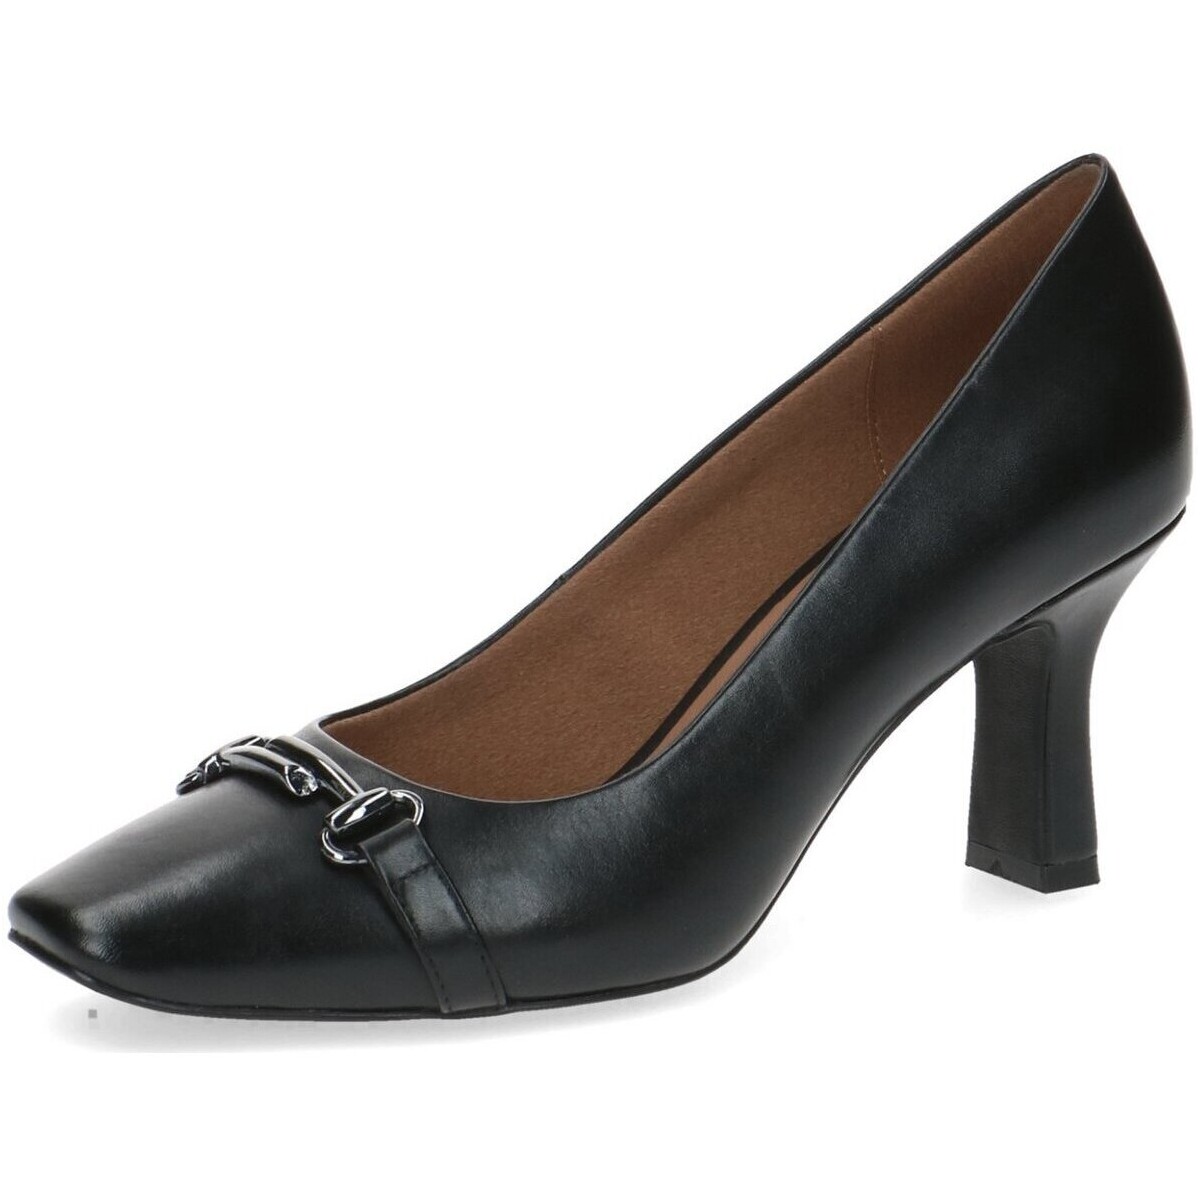 Chaussures Femme Escarpins Caprice  Noir